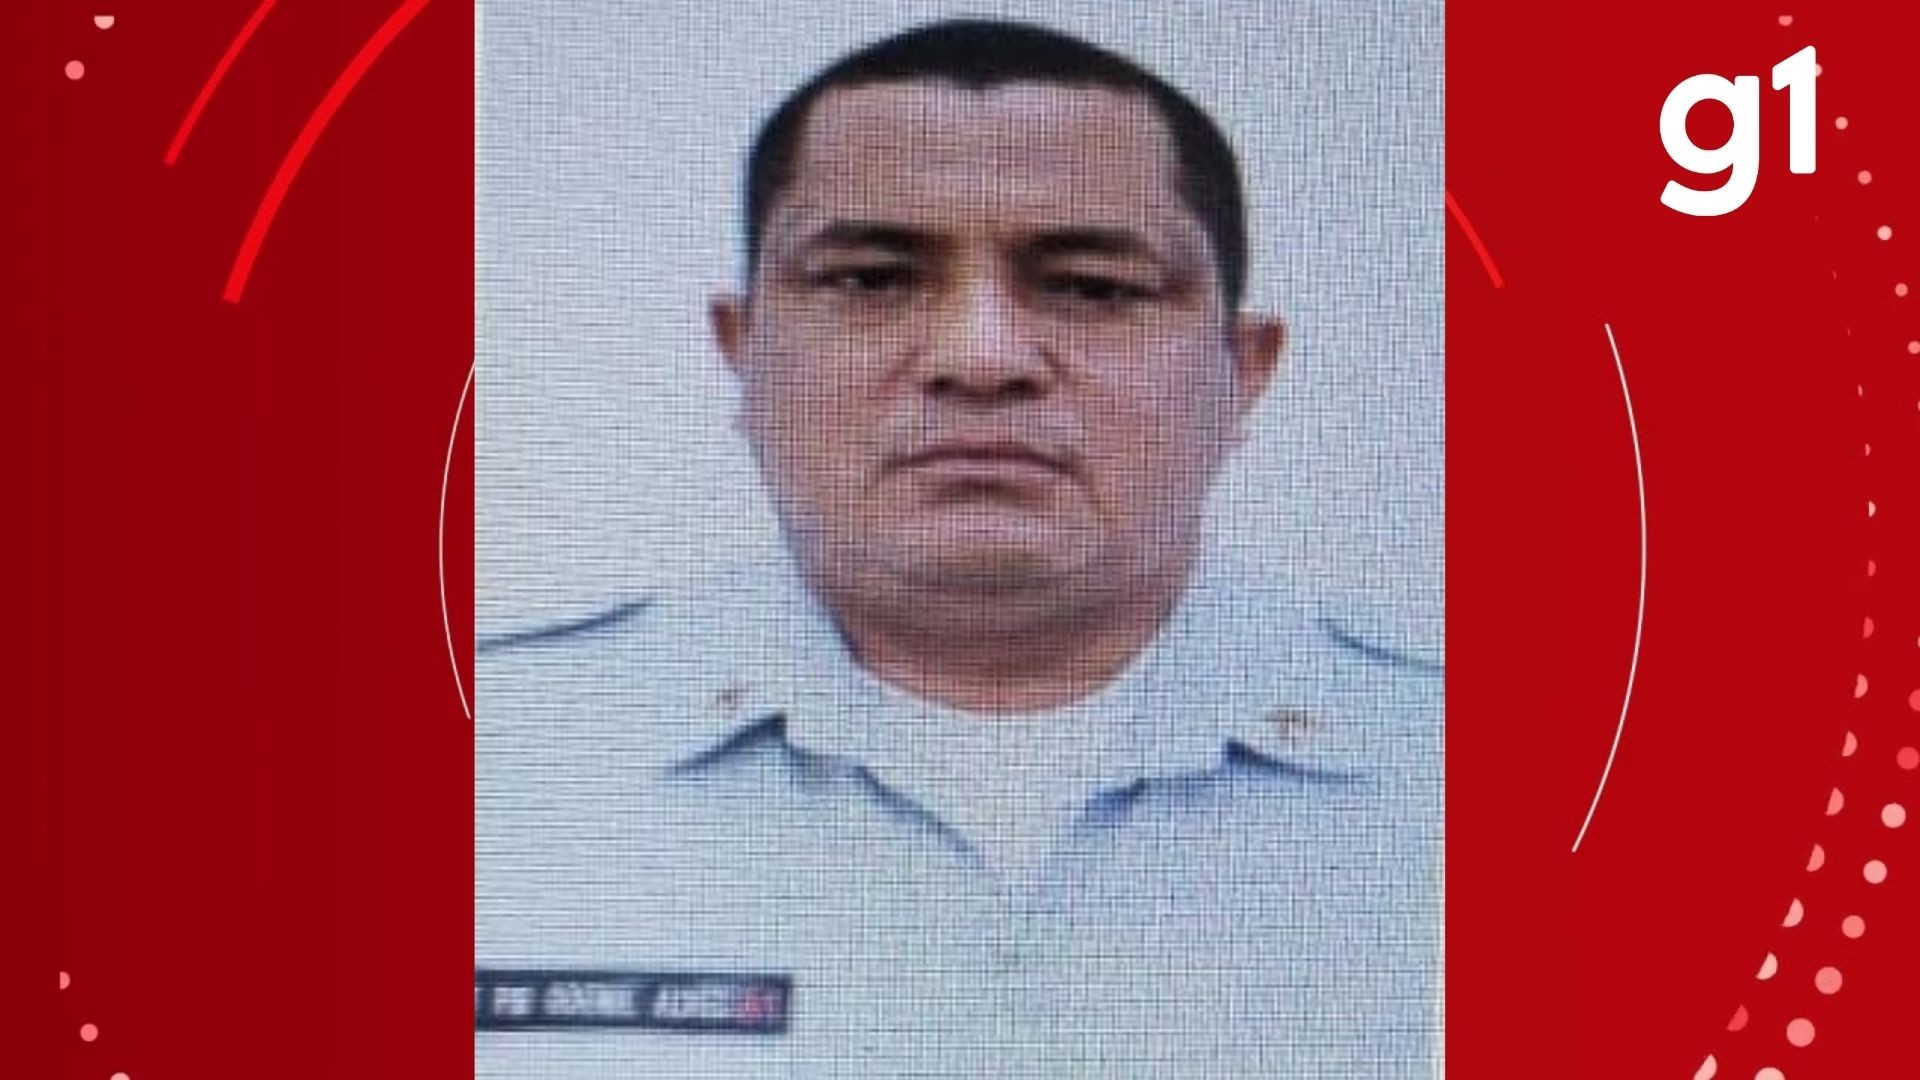 Policial militar baleado na cabeça em Cuiabá foi morto na véspera do aniversário, diz irmão